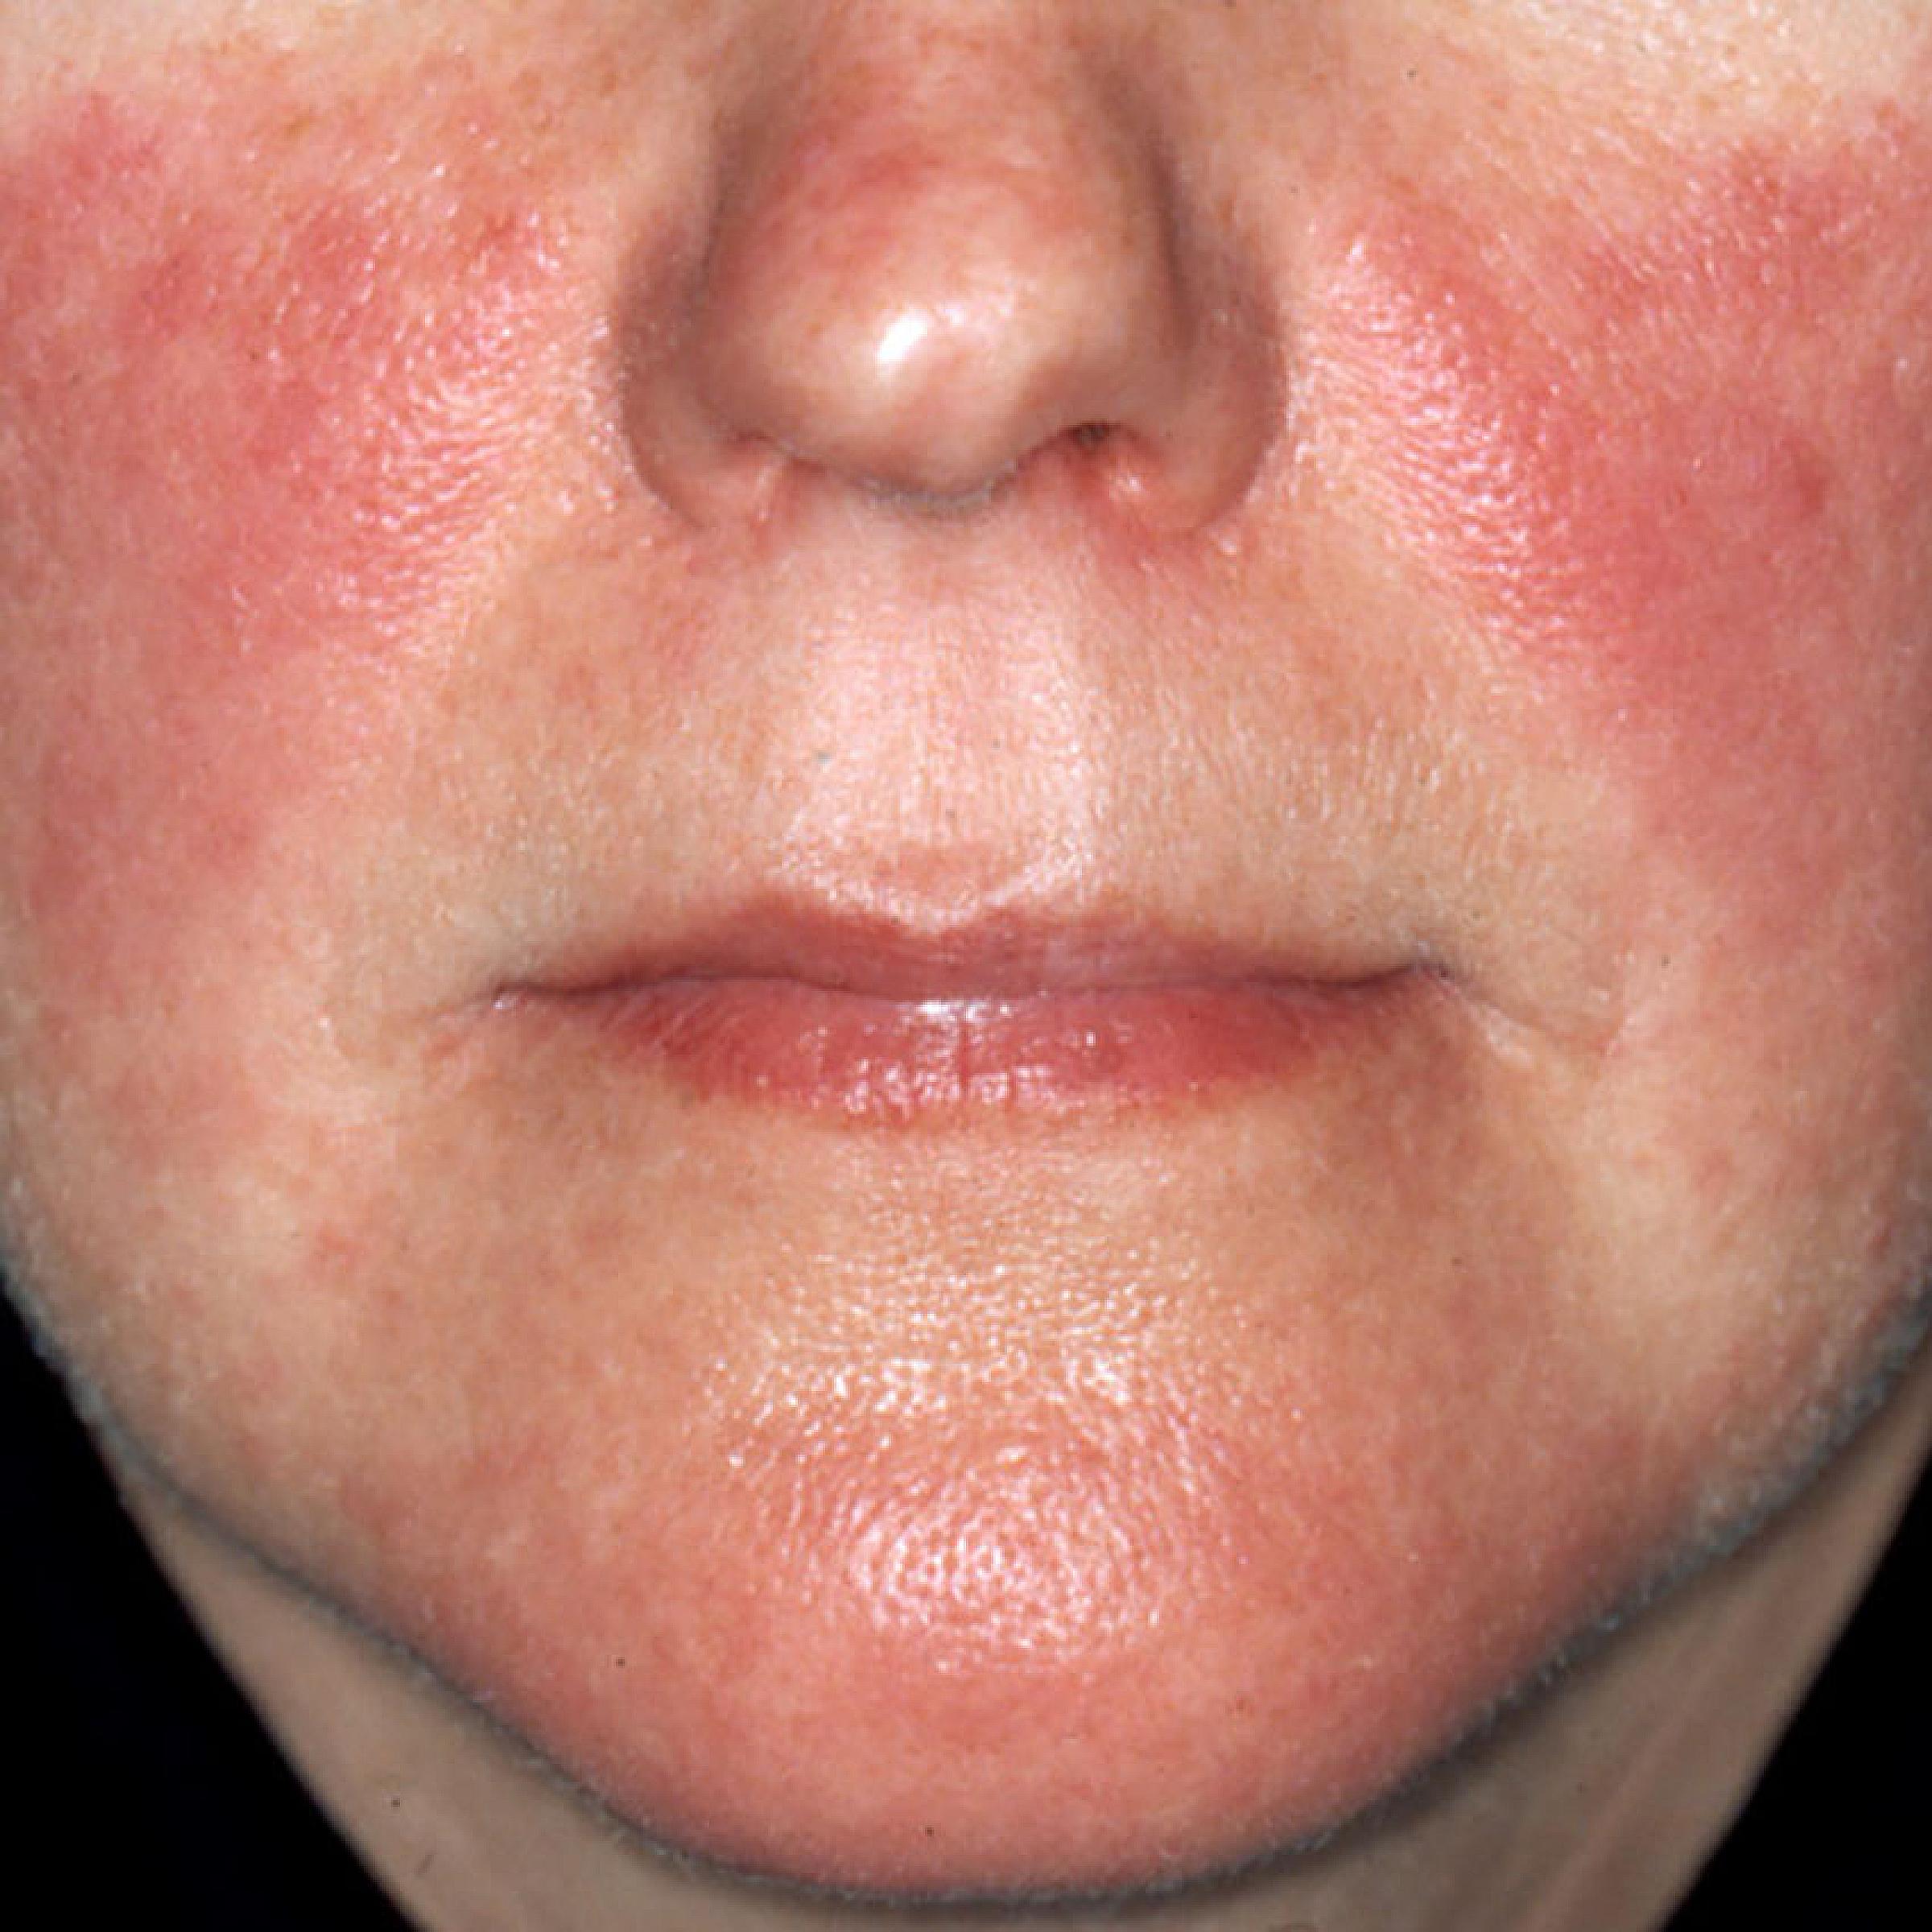 Lupus face rash